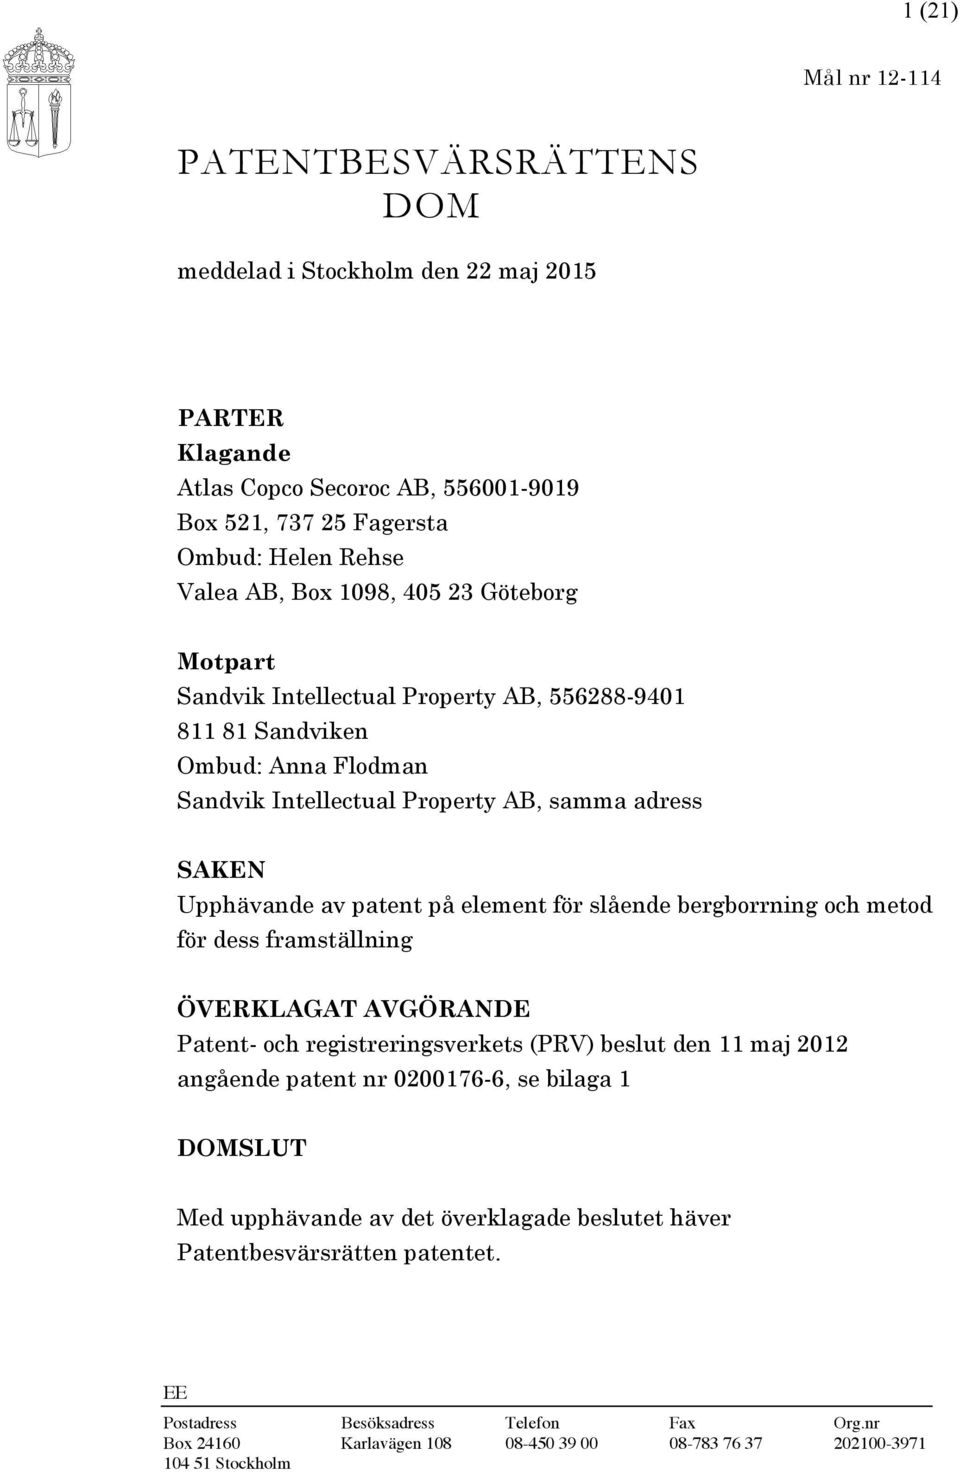 element för slående bergborrning och metod för dess framställning ÖVERKLAGAT AVGÖRANDE Patent- och registreringsverkets (PRV) beslut den 11 maj 2012 angående patent nr 0200176-6, se bilaga 1